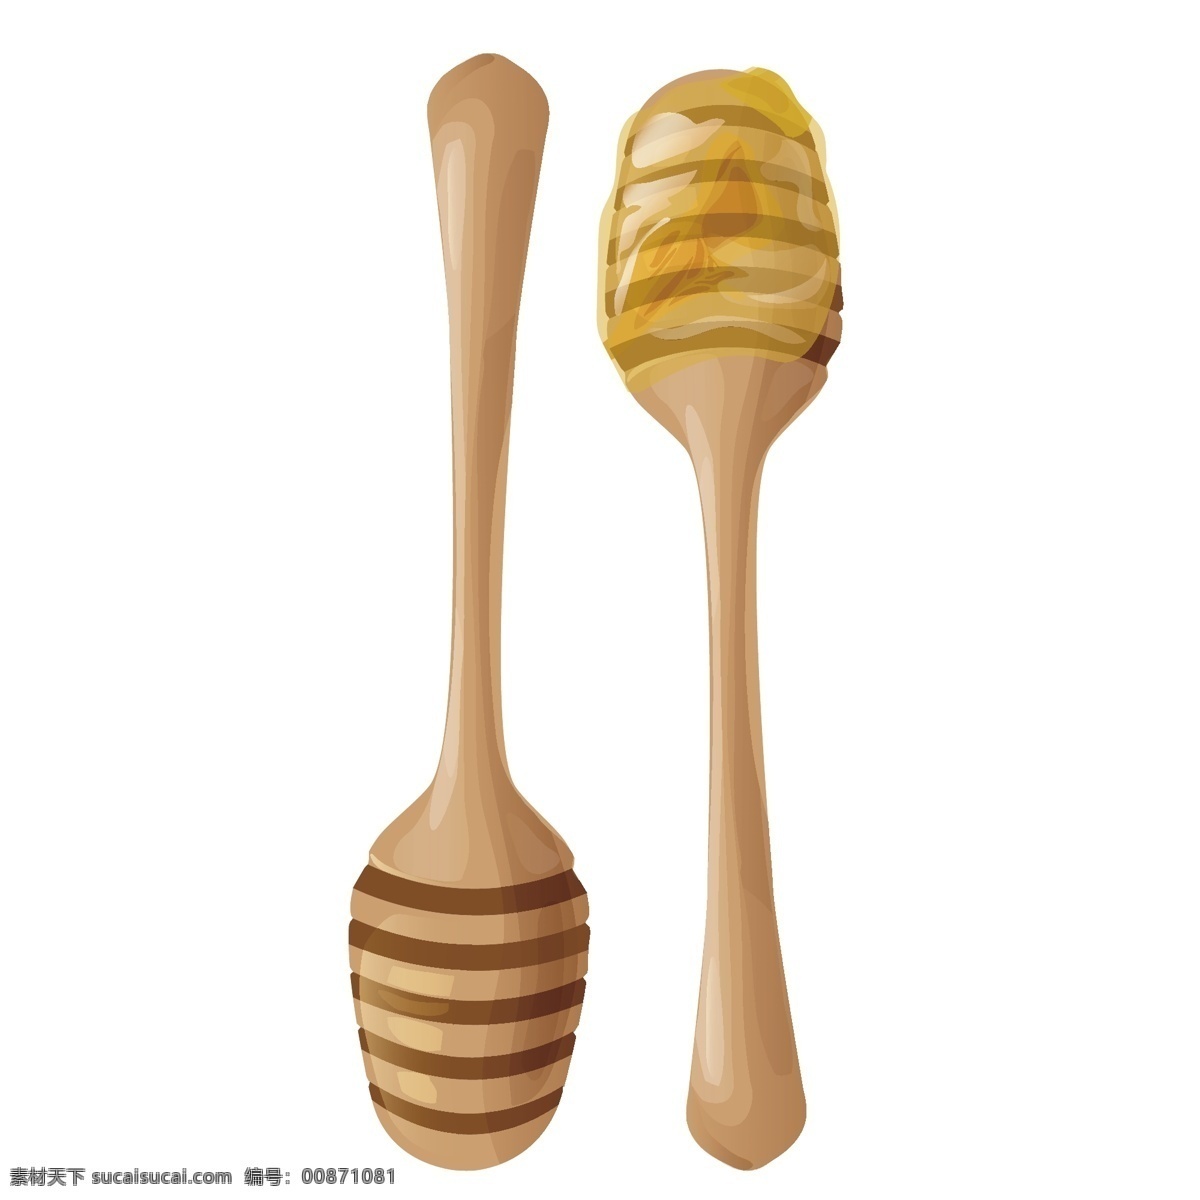 卡通 蜂蜜 棒 矢量 卡通蜂蜜 蜂蜜棒 蜜汁 蜂蜜棒的蜜汁 木头 卡通的木头棒 木头帮